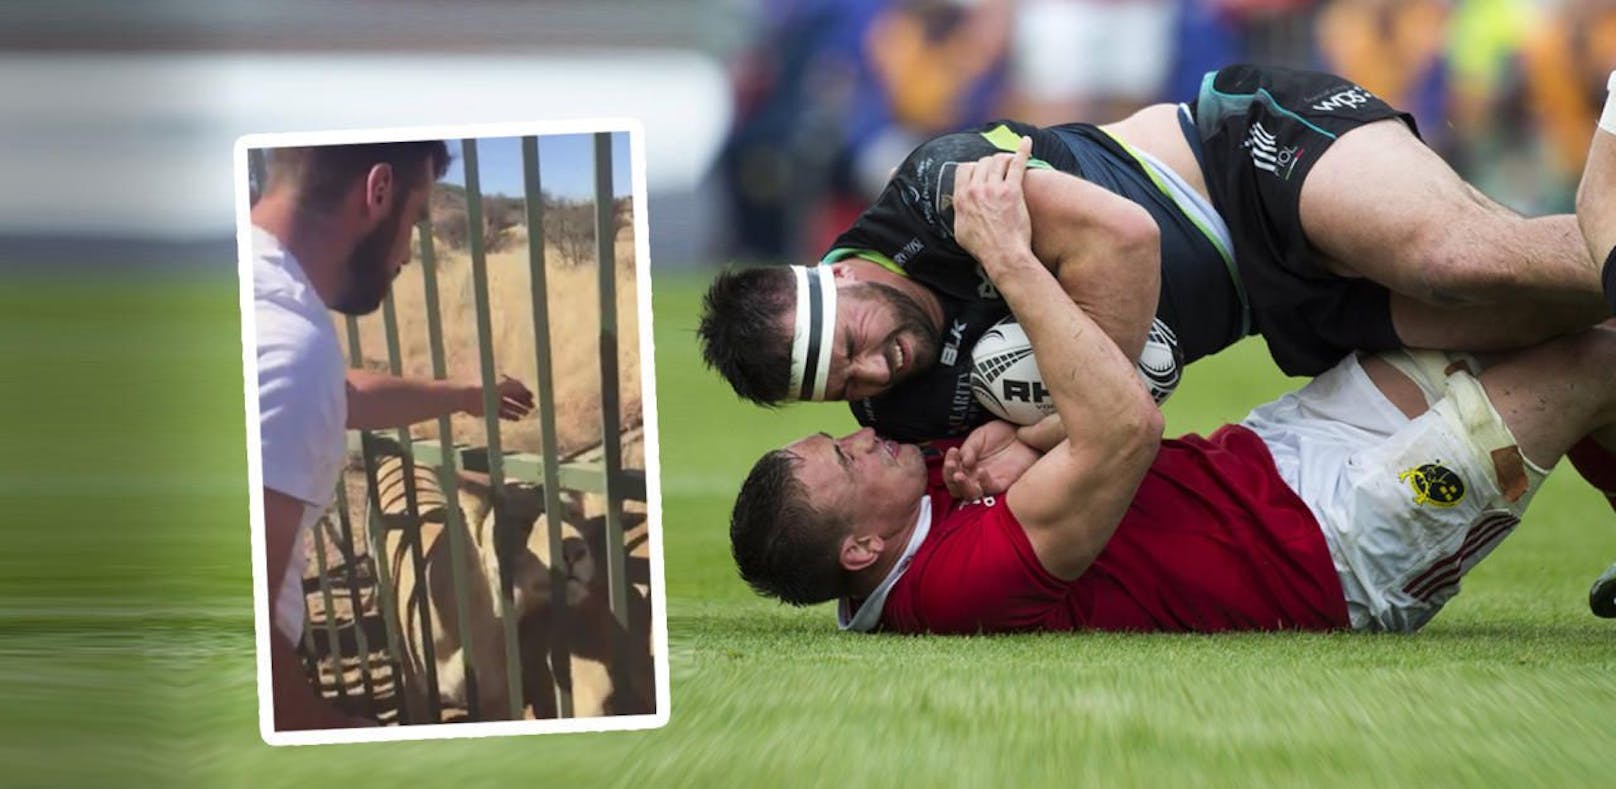 "Dumm!" Rugby-Spieler wird von Löwen gebissen